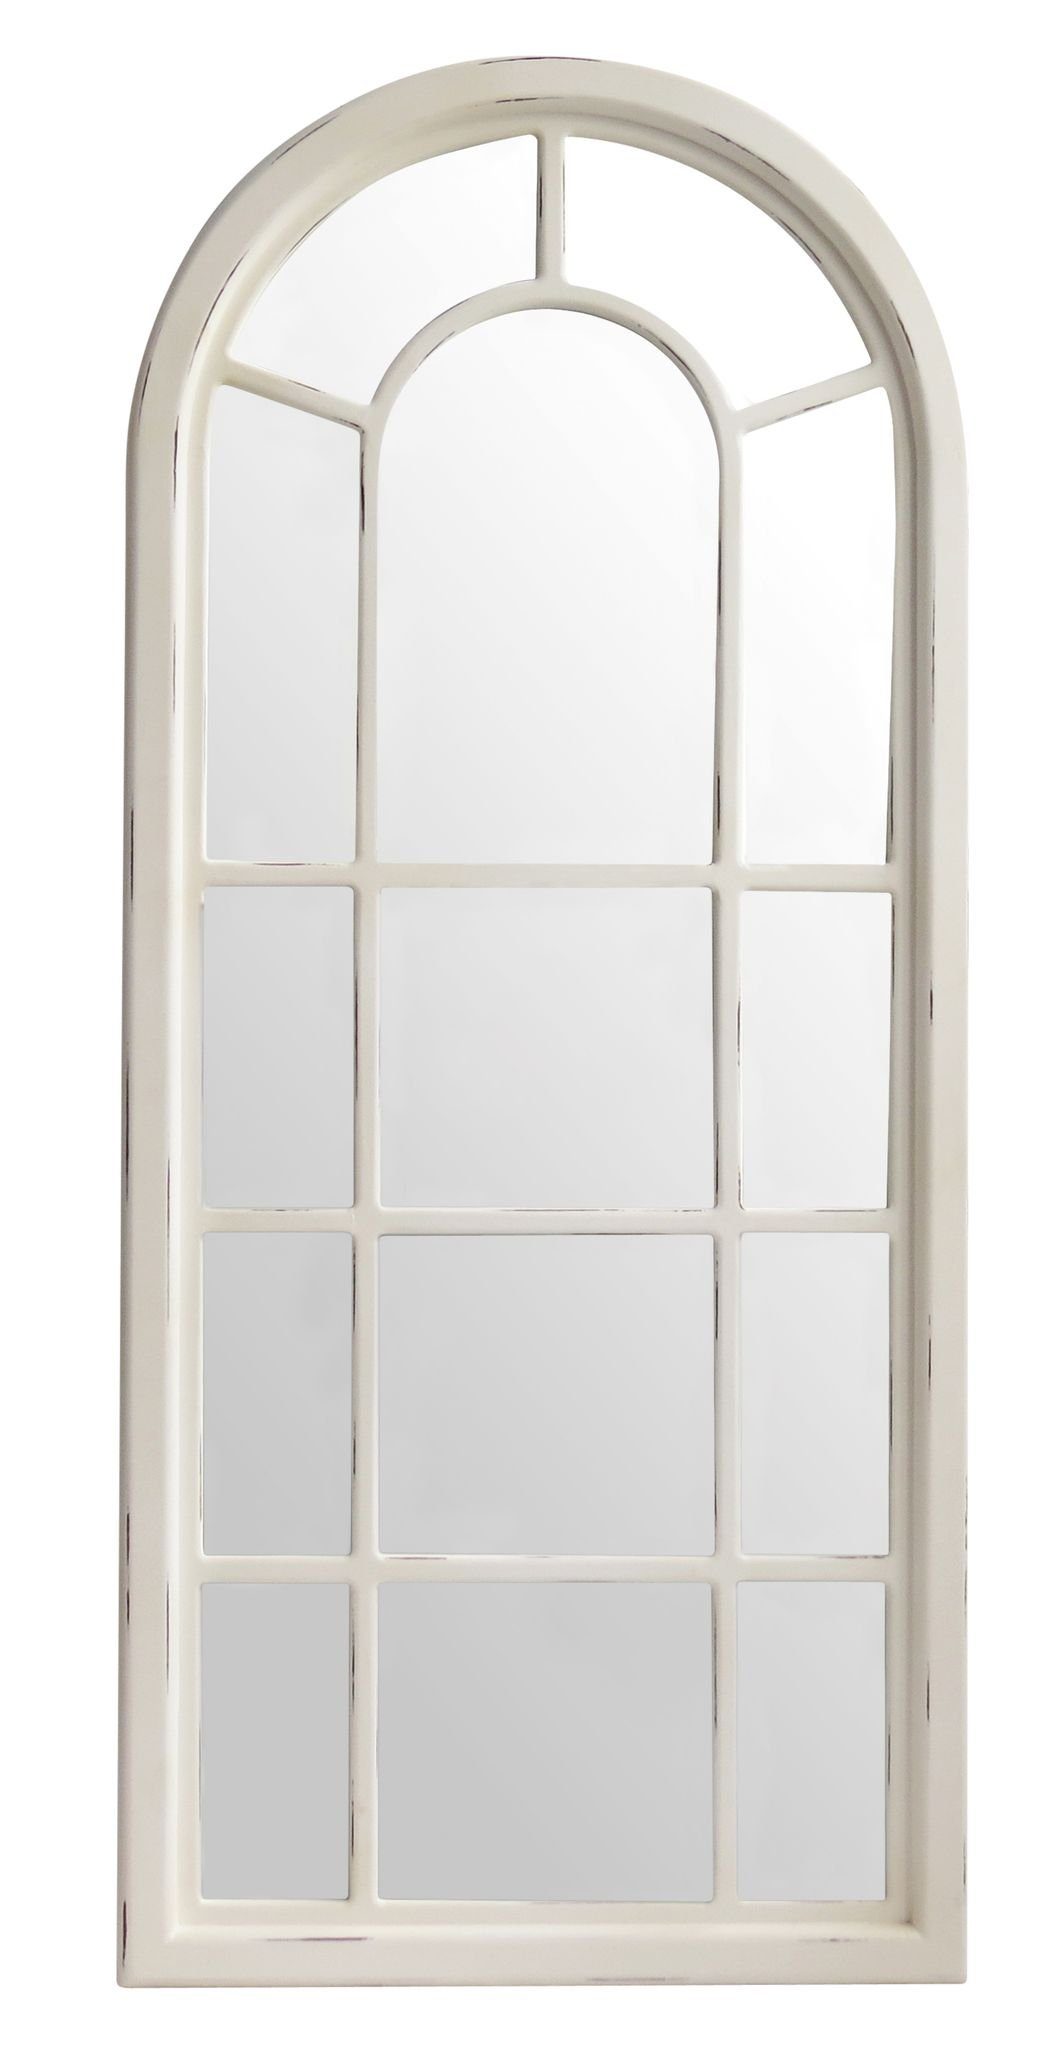 elbmöbel Wandspiegel »Spiegel Wandspiegel weiß Landhaus Holz Fensteroptik«,  Wandspiegel: Sprossen Fenster 70x160x4 cm weiß holz Landhausstil